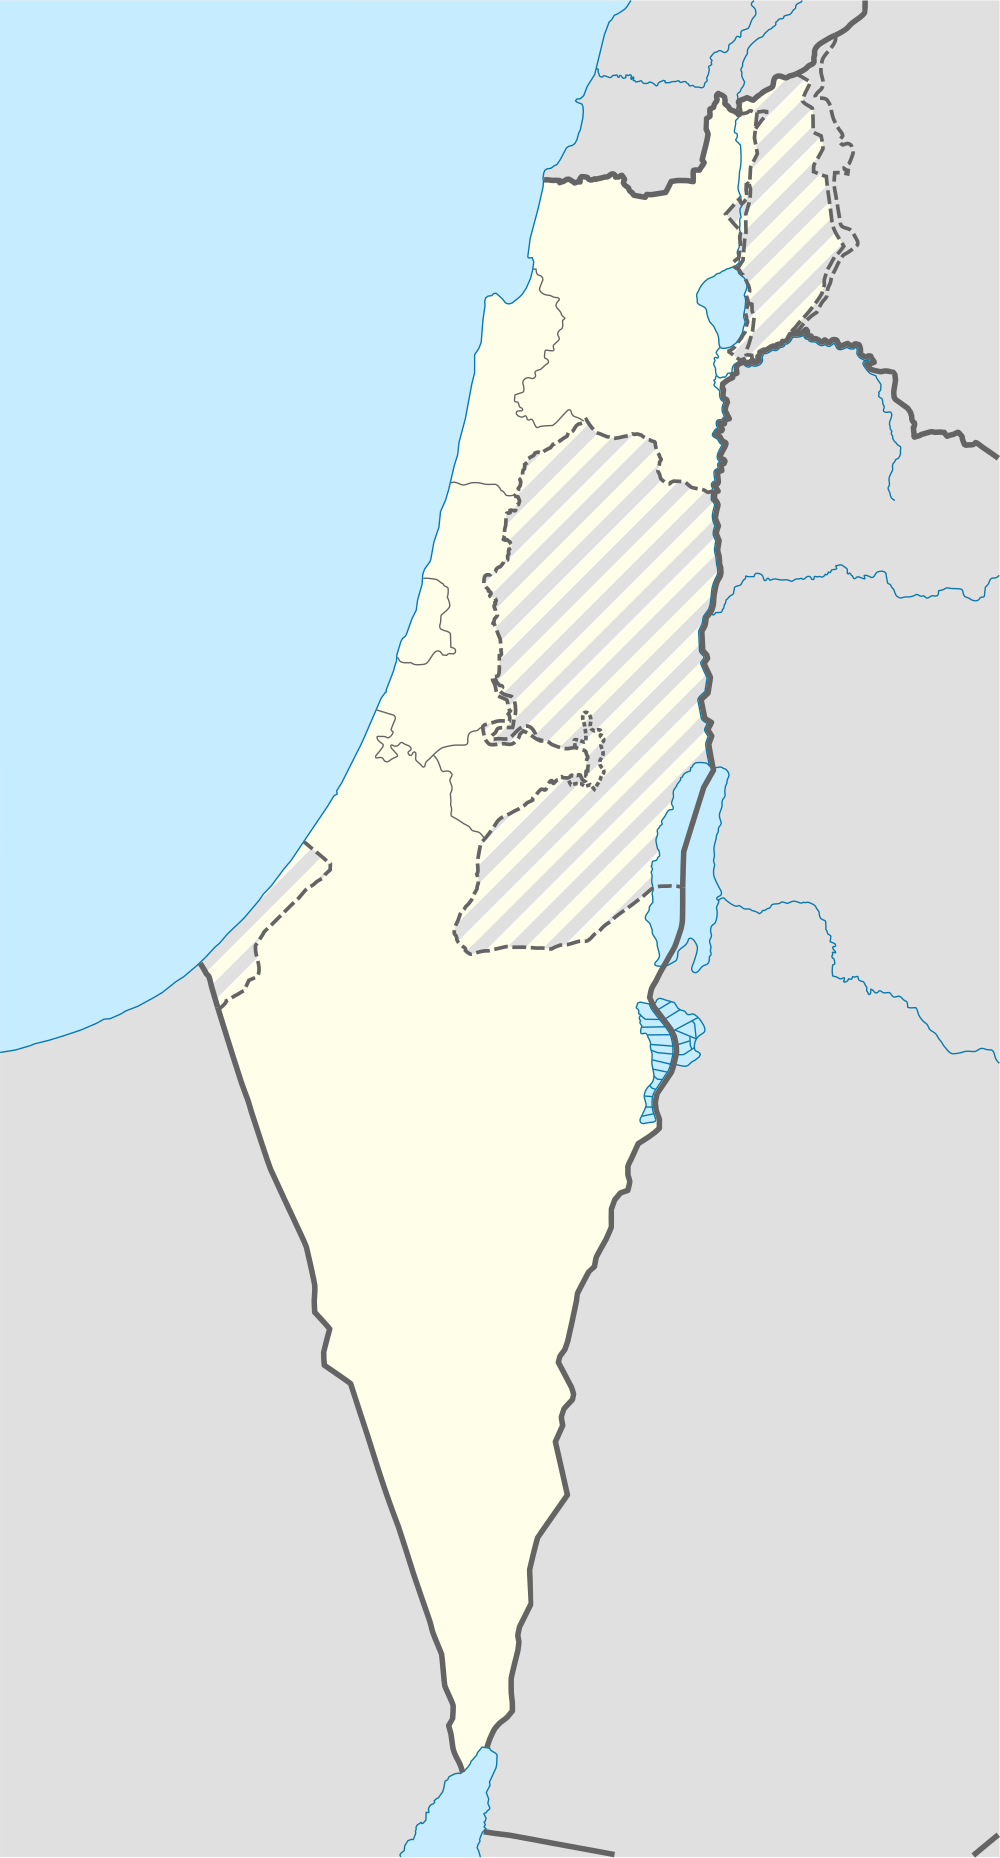 Cansado/Parques y reservas naturales de Israel está ubicado en Israel